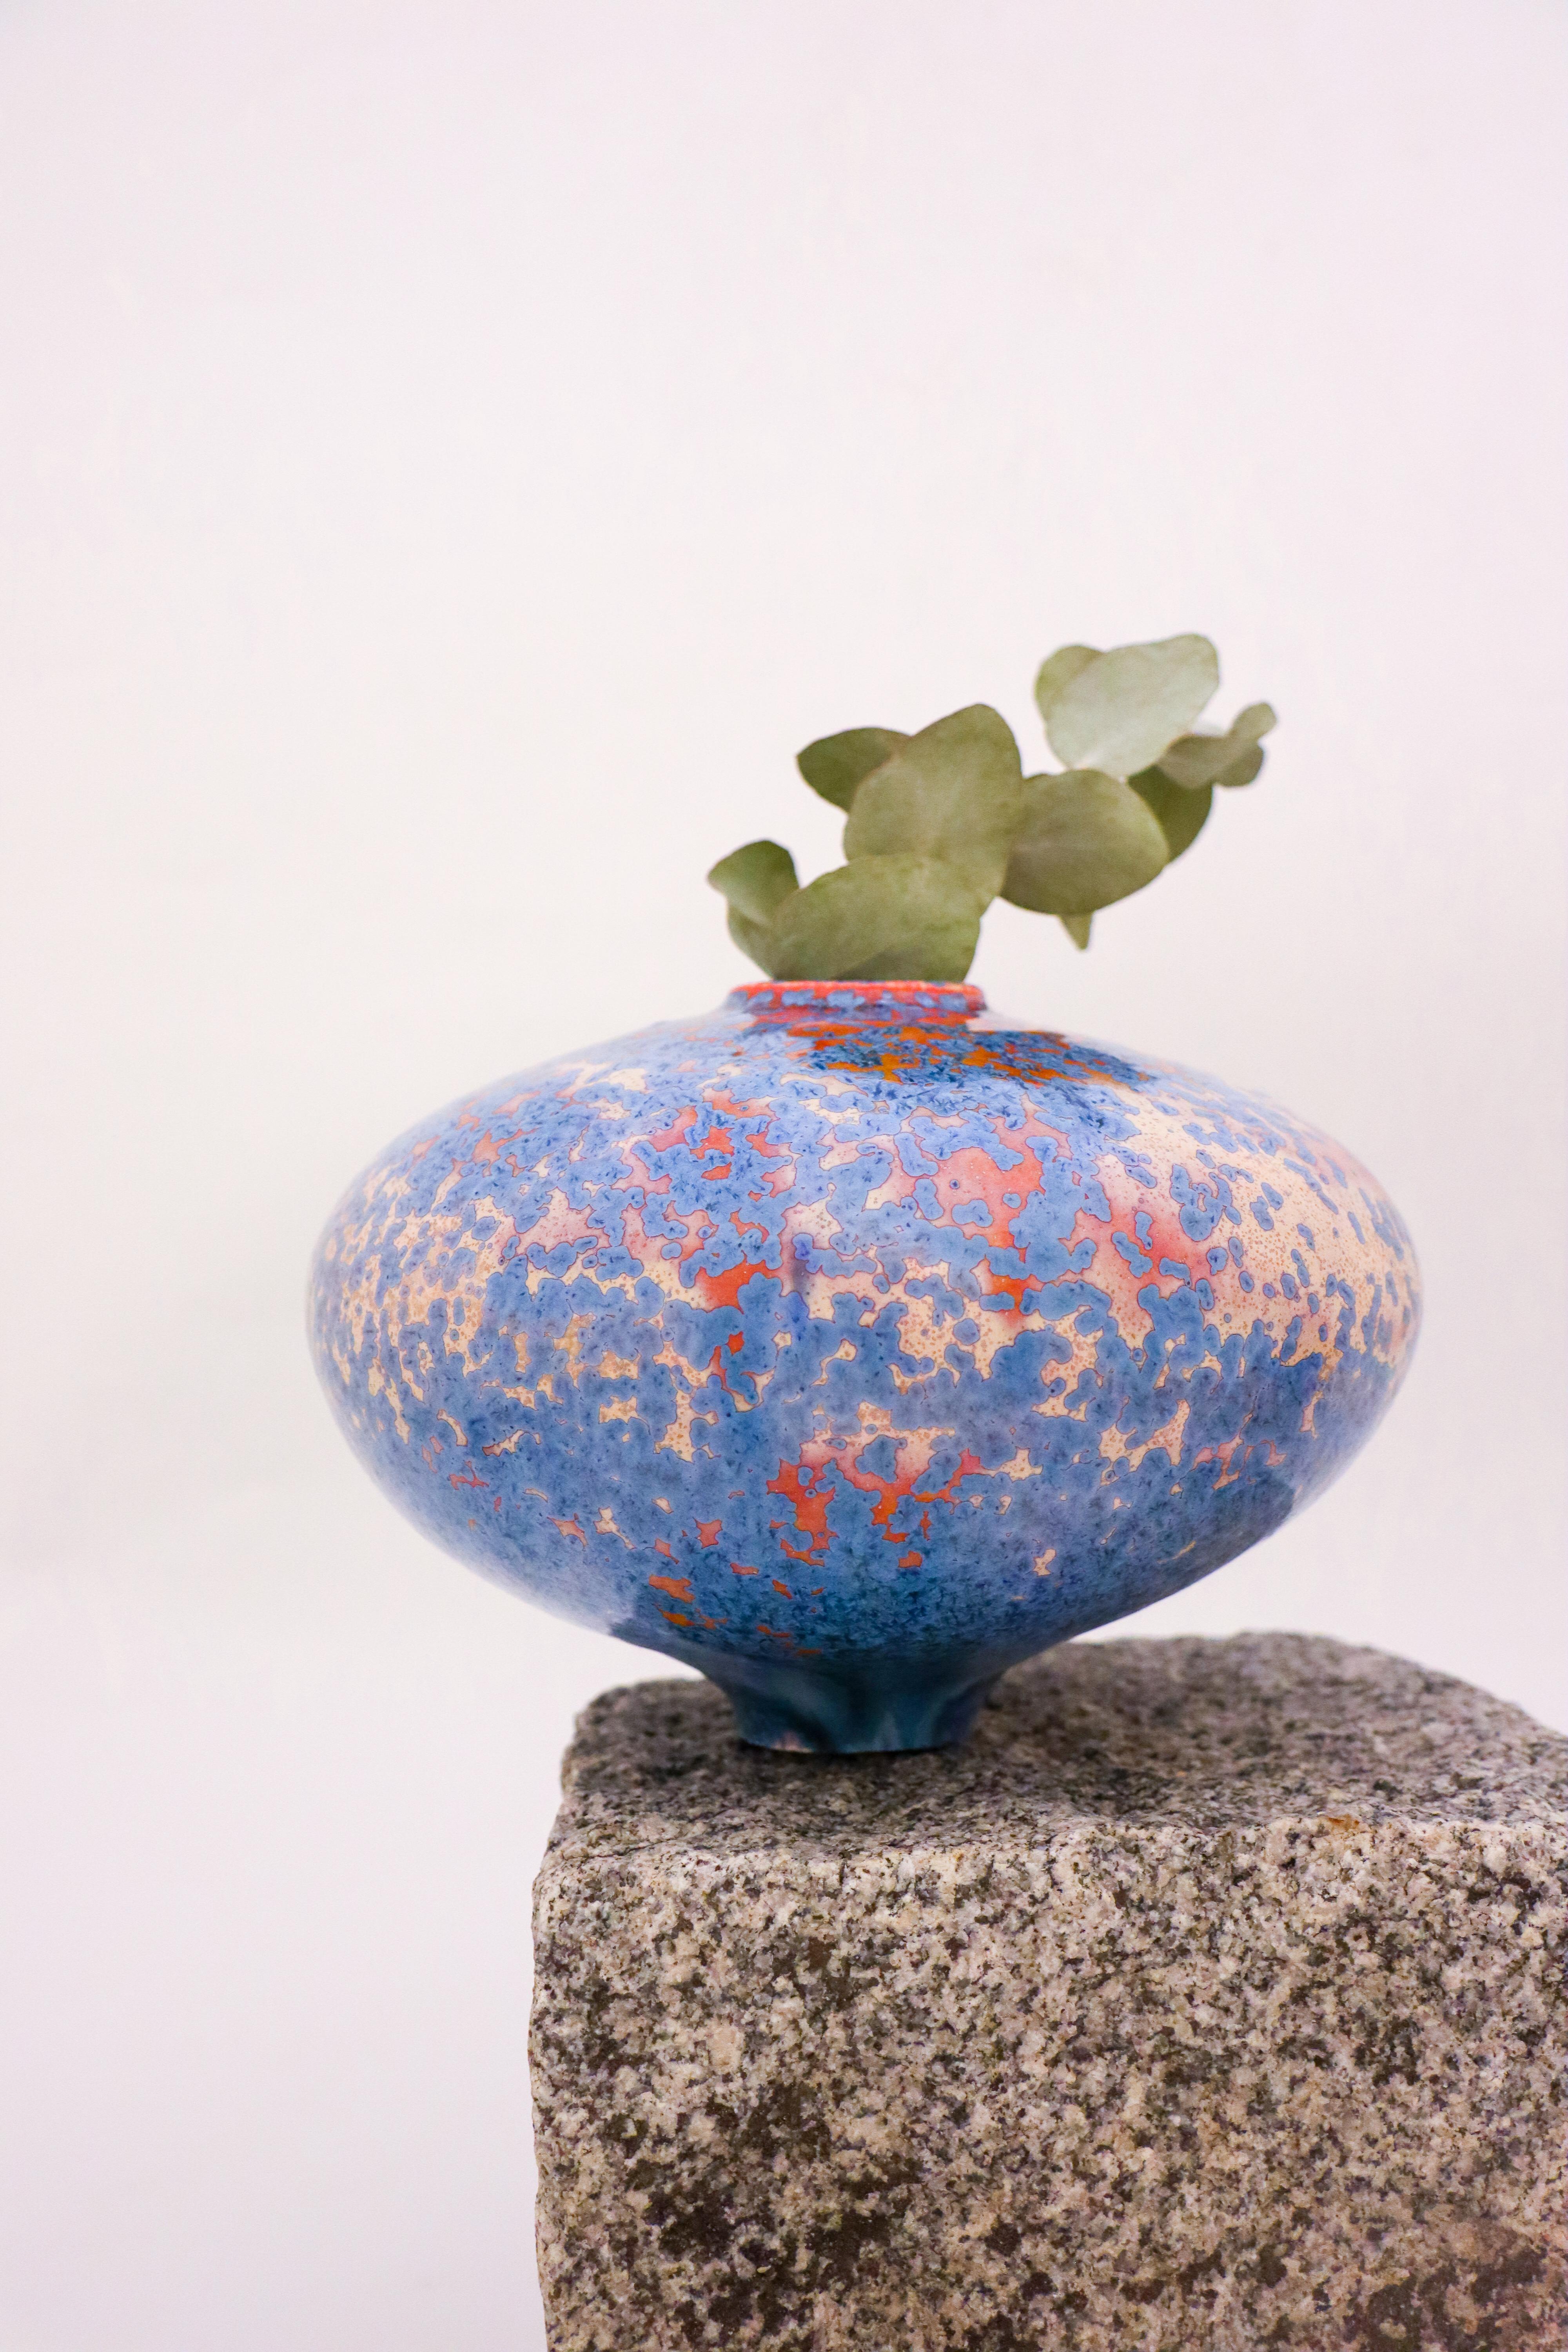 Stellen Sie diese exquisite Vase von Isak Isaksson in Ihrem Haus auf und verleihen Sie ihr einen Hauch von zeitgenössischem Stil. Die 13 cm hohe und 19 cm breite Vase ist ein wunderschönes Stück Kunstkeramik mit einer glänzenden Oberfläche und einem